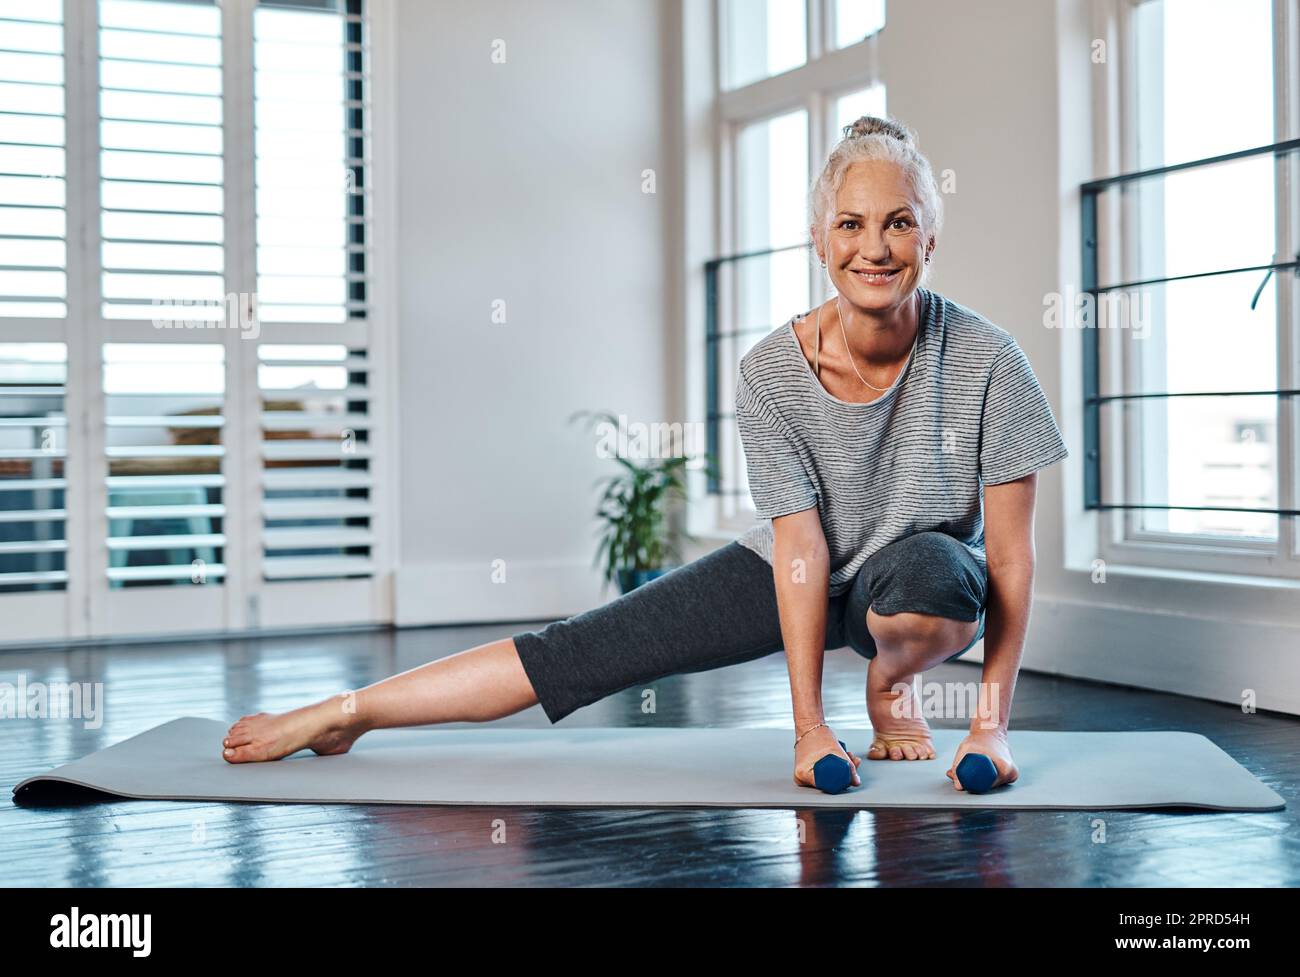 Kleine Gewichte neigen dazu, ein wenig zu helfen. Porträt einer fröhlichen reifen Frau, die tagsüber Yoga praktiziert und dabei Gewichte in einem Studio verwendet. Stockfoto